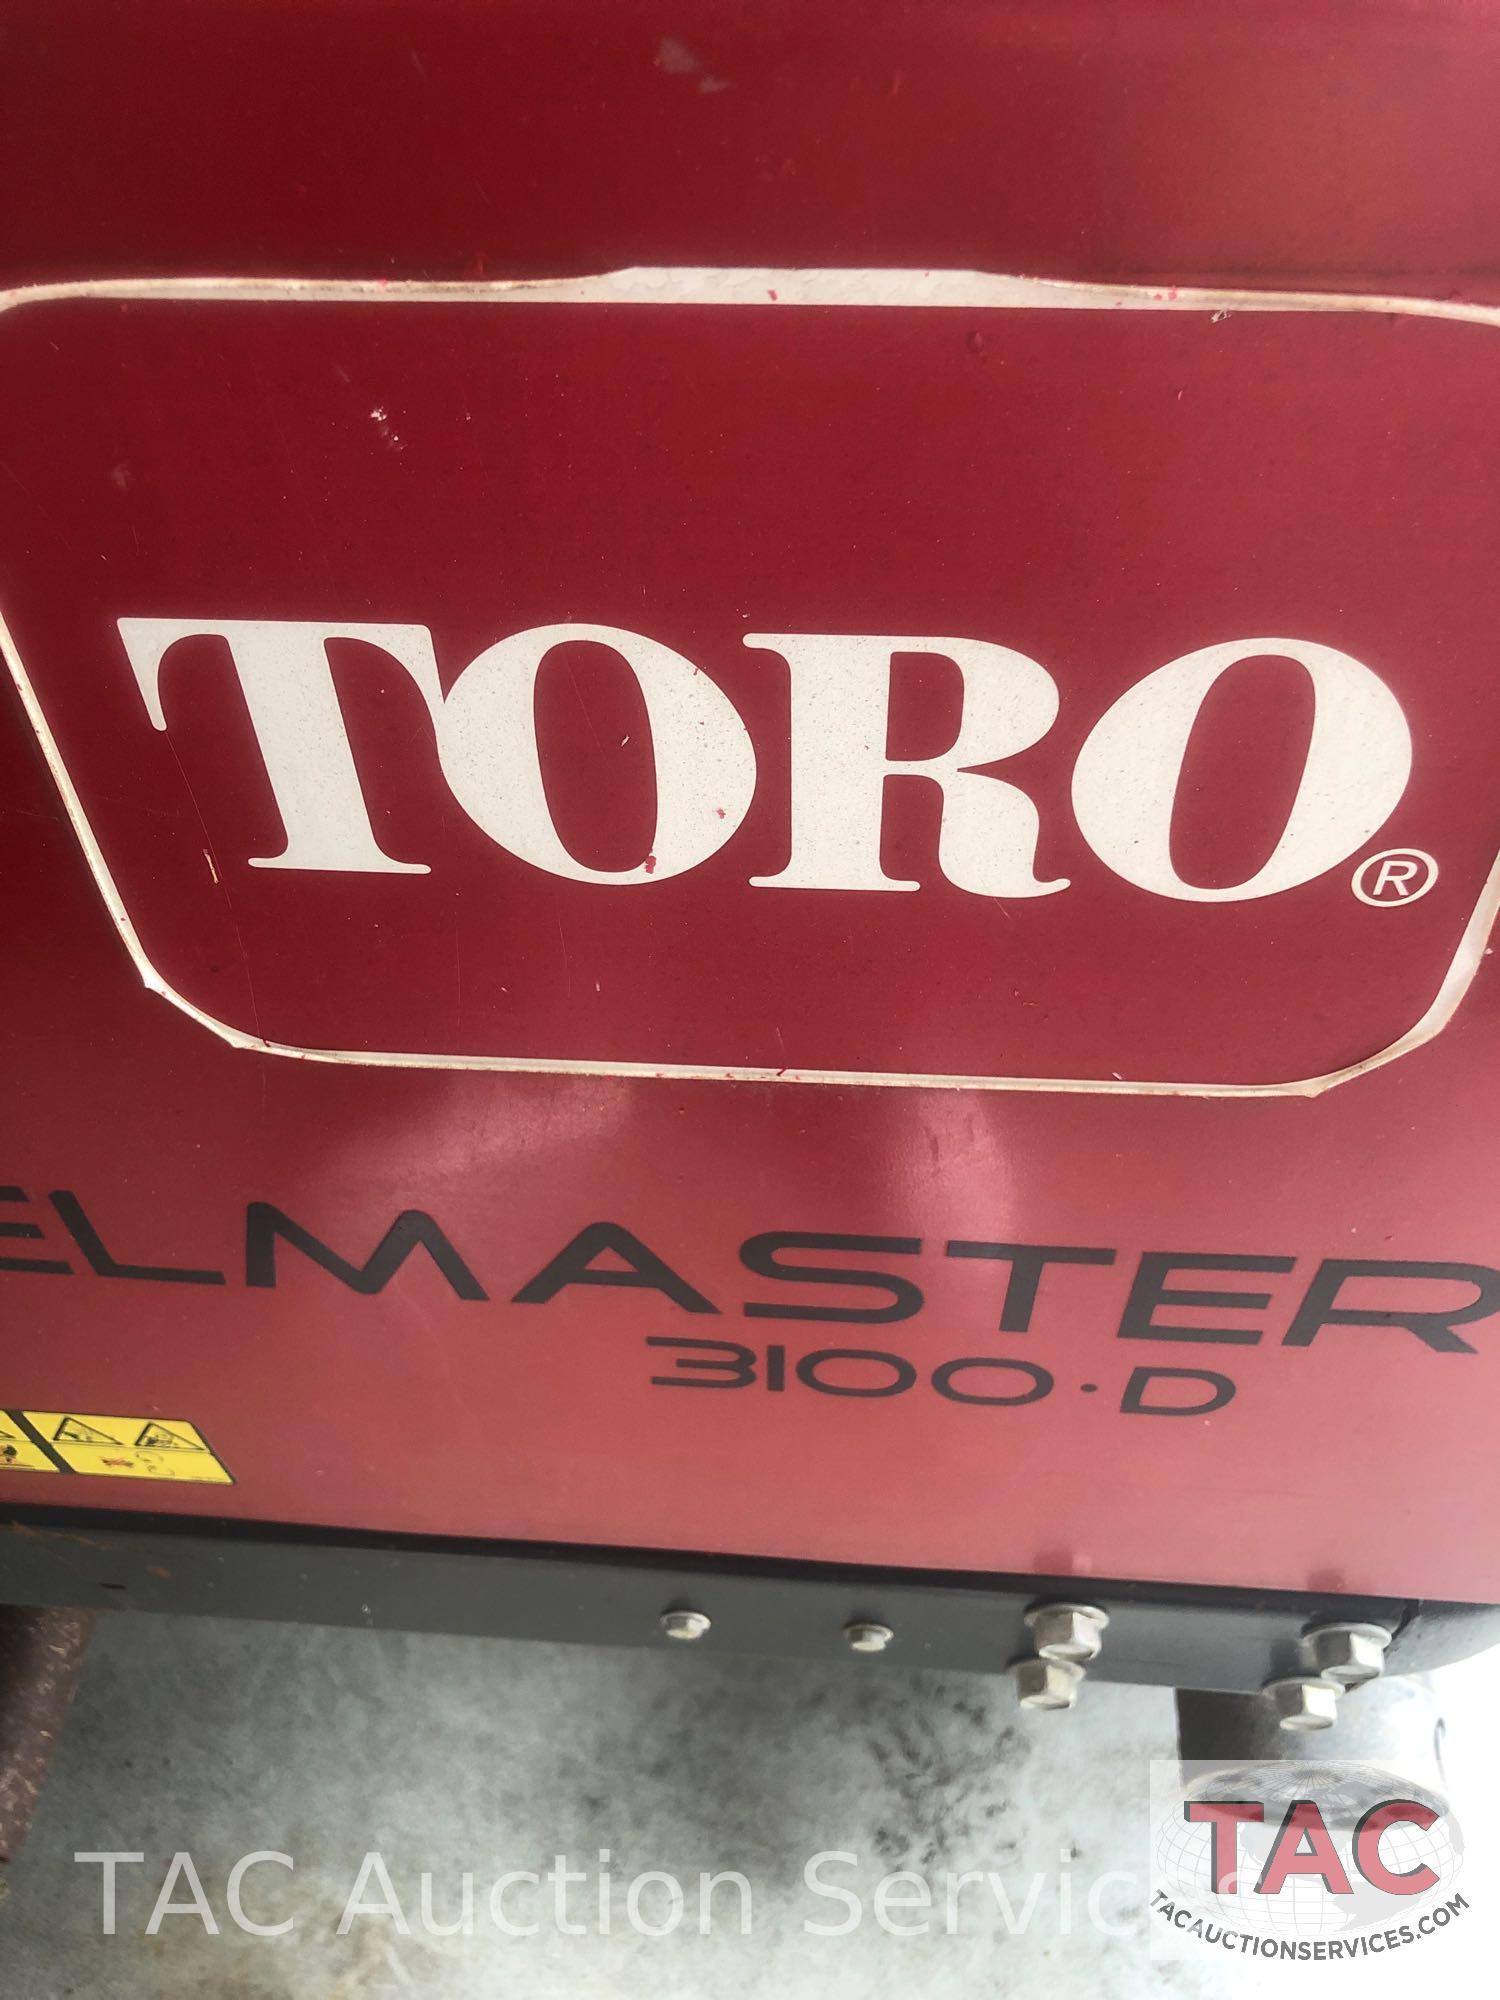 Toro Reelmaster 3100-D Turf Mower